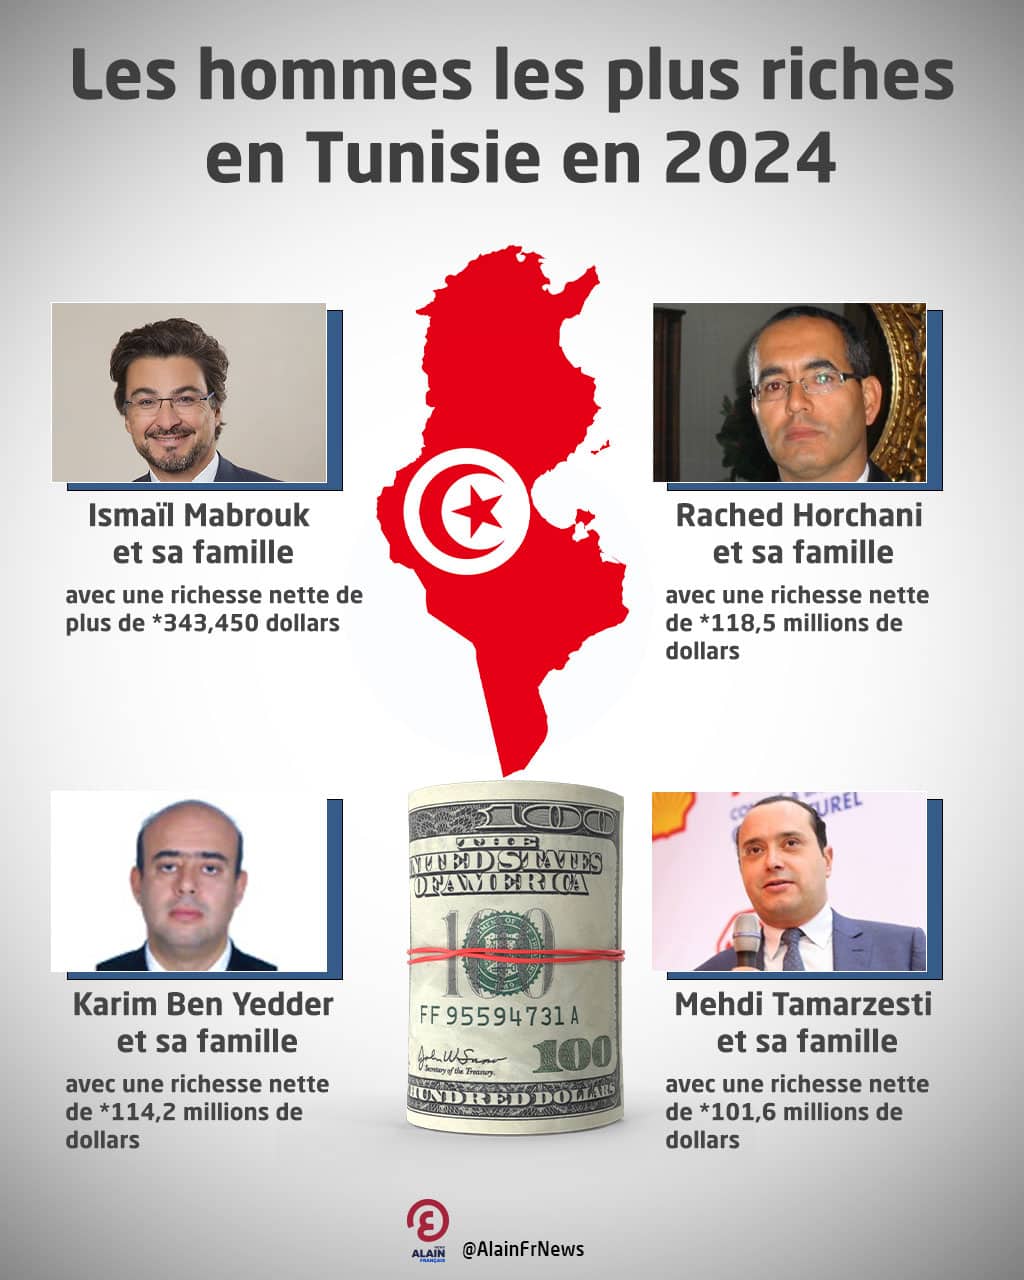 Les hommes les plus riches en Tunisie en 2024